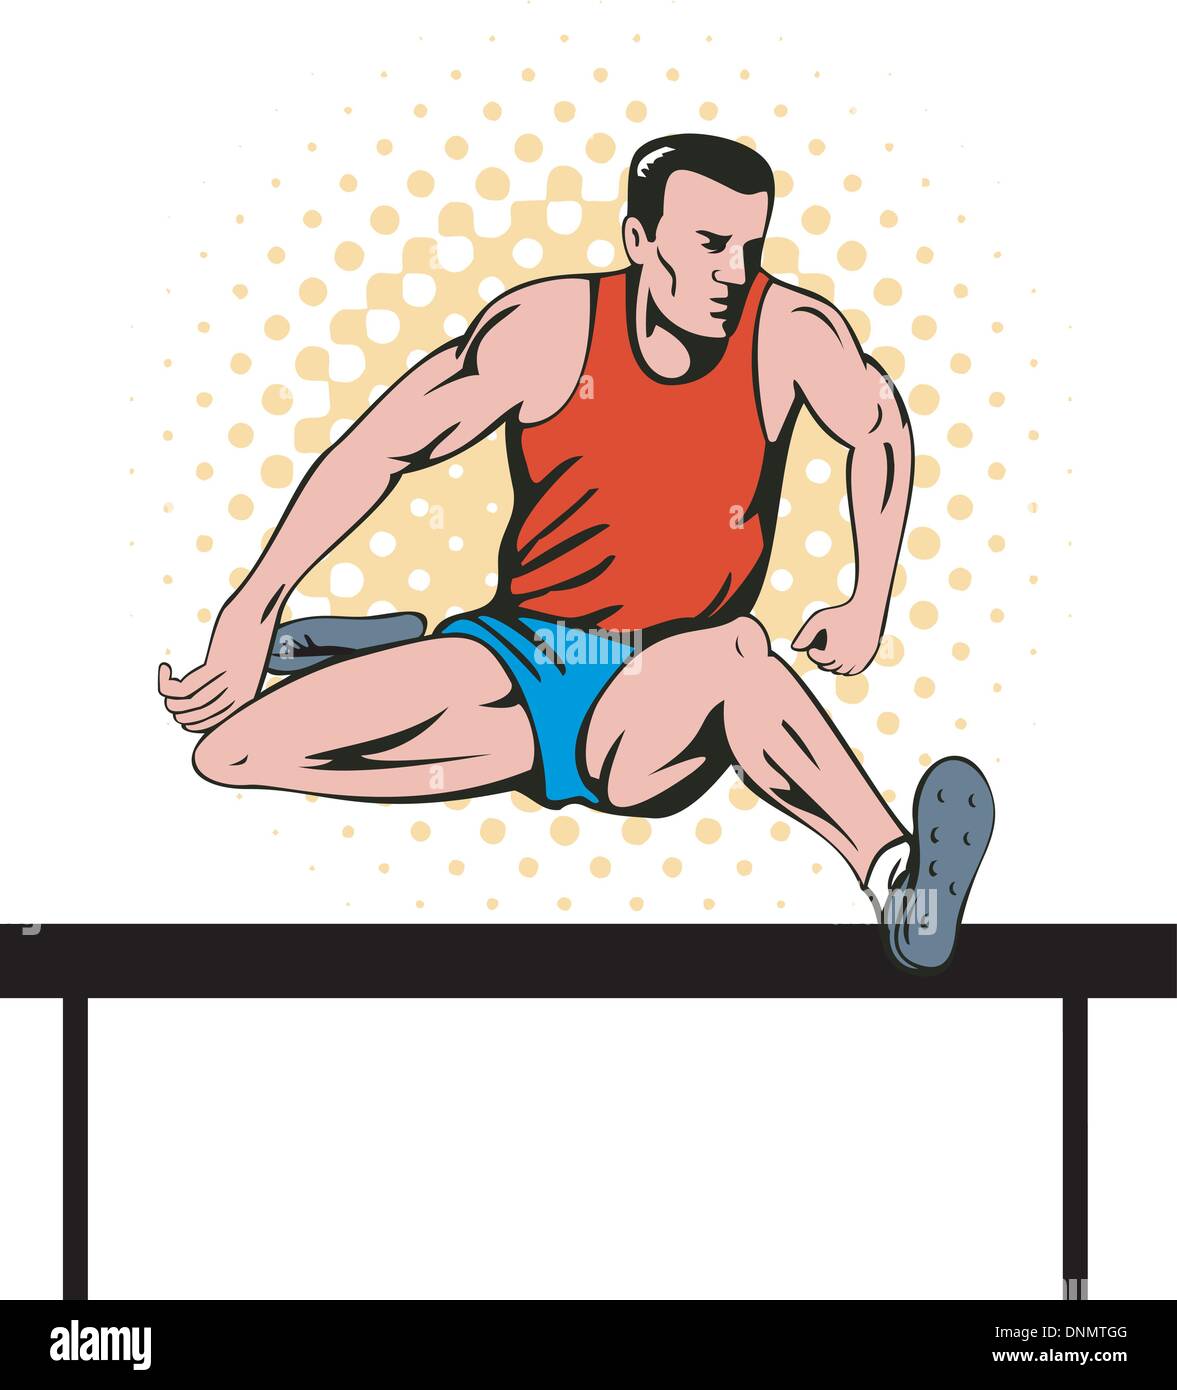 Abbildung eines Leichtathletik-Athleten laufen die Hürden im retro-Stil gemacht Stock Vektor